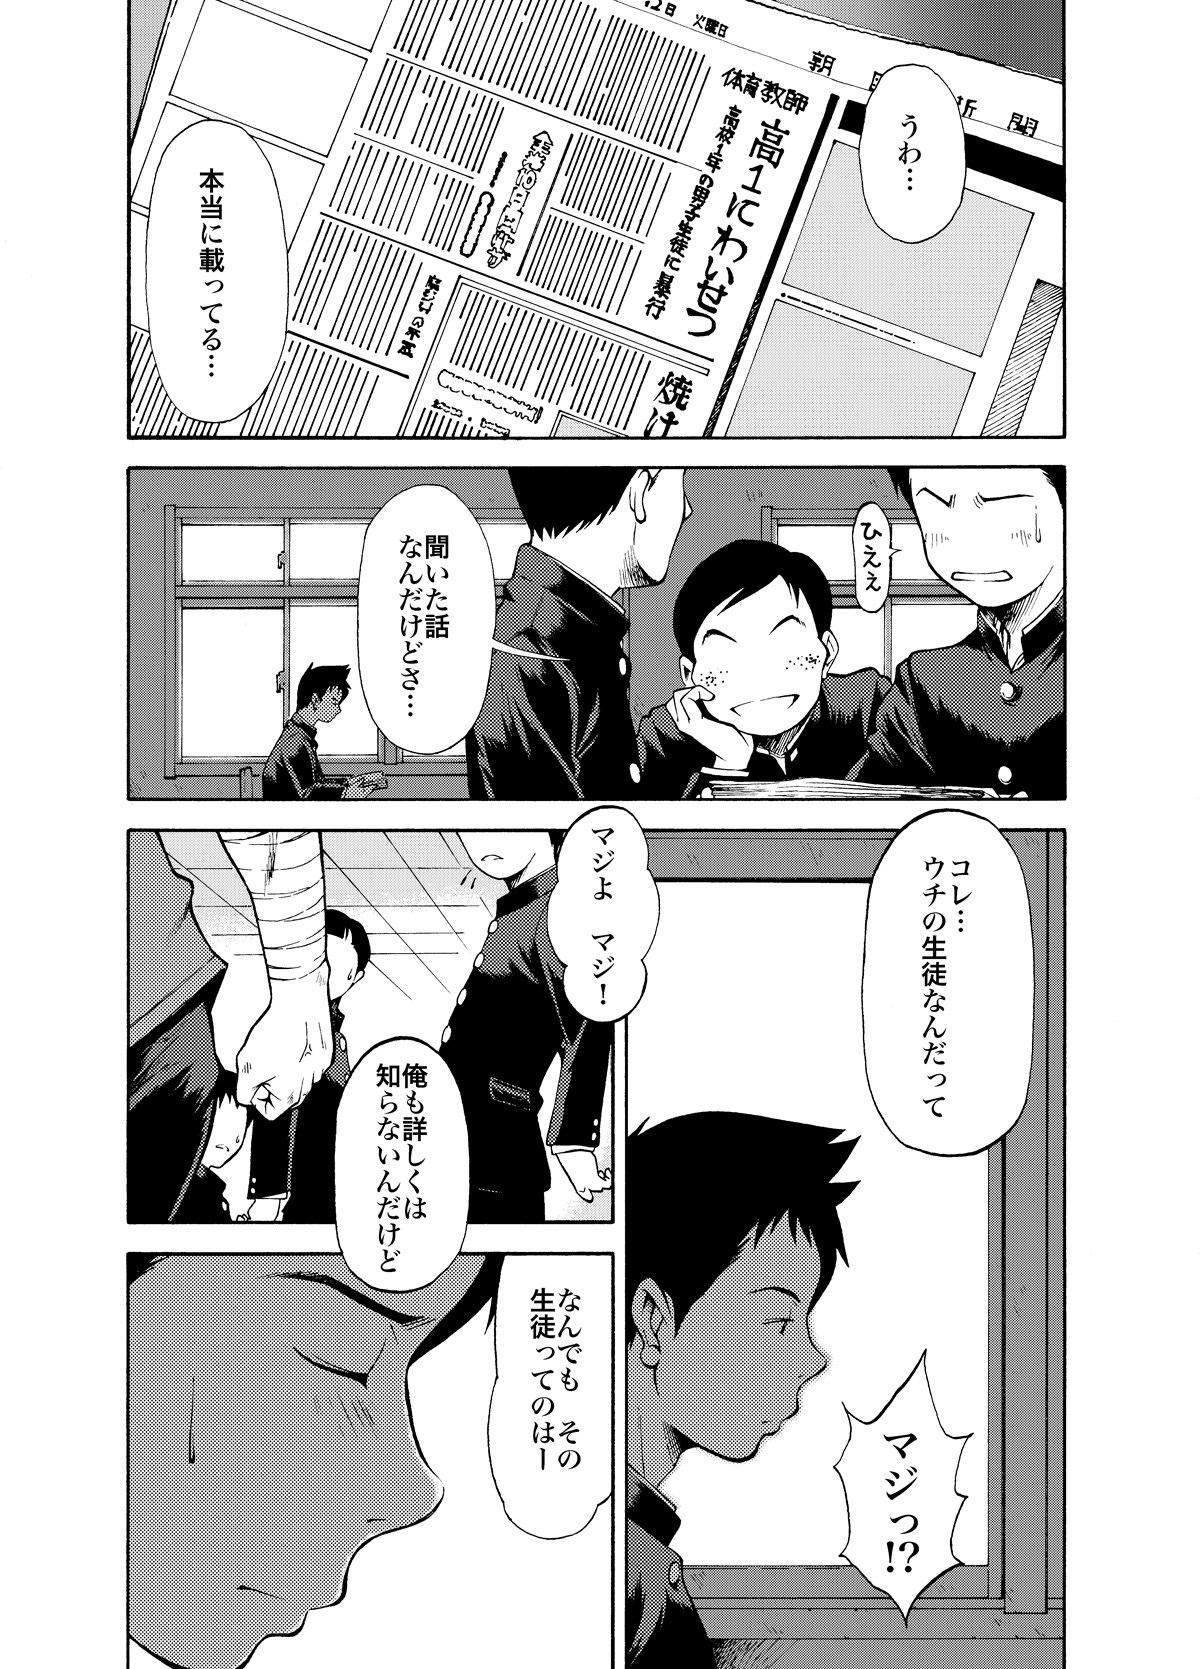 Eating KOWMEIISM - Oumagatoki & Reimei 8teenxxx - Page 12